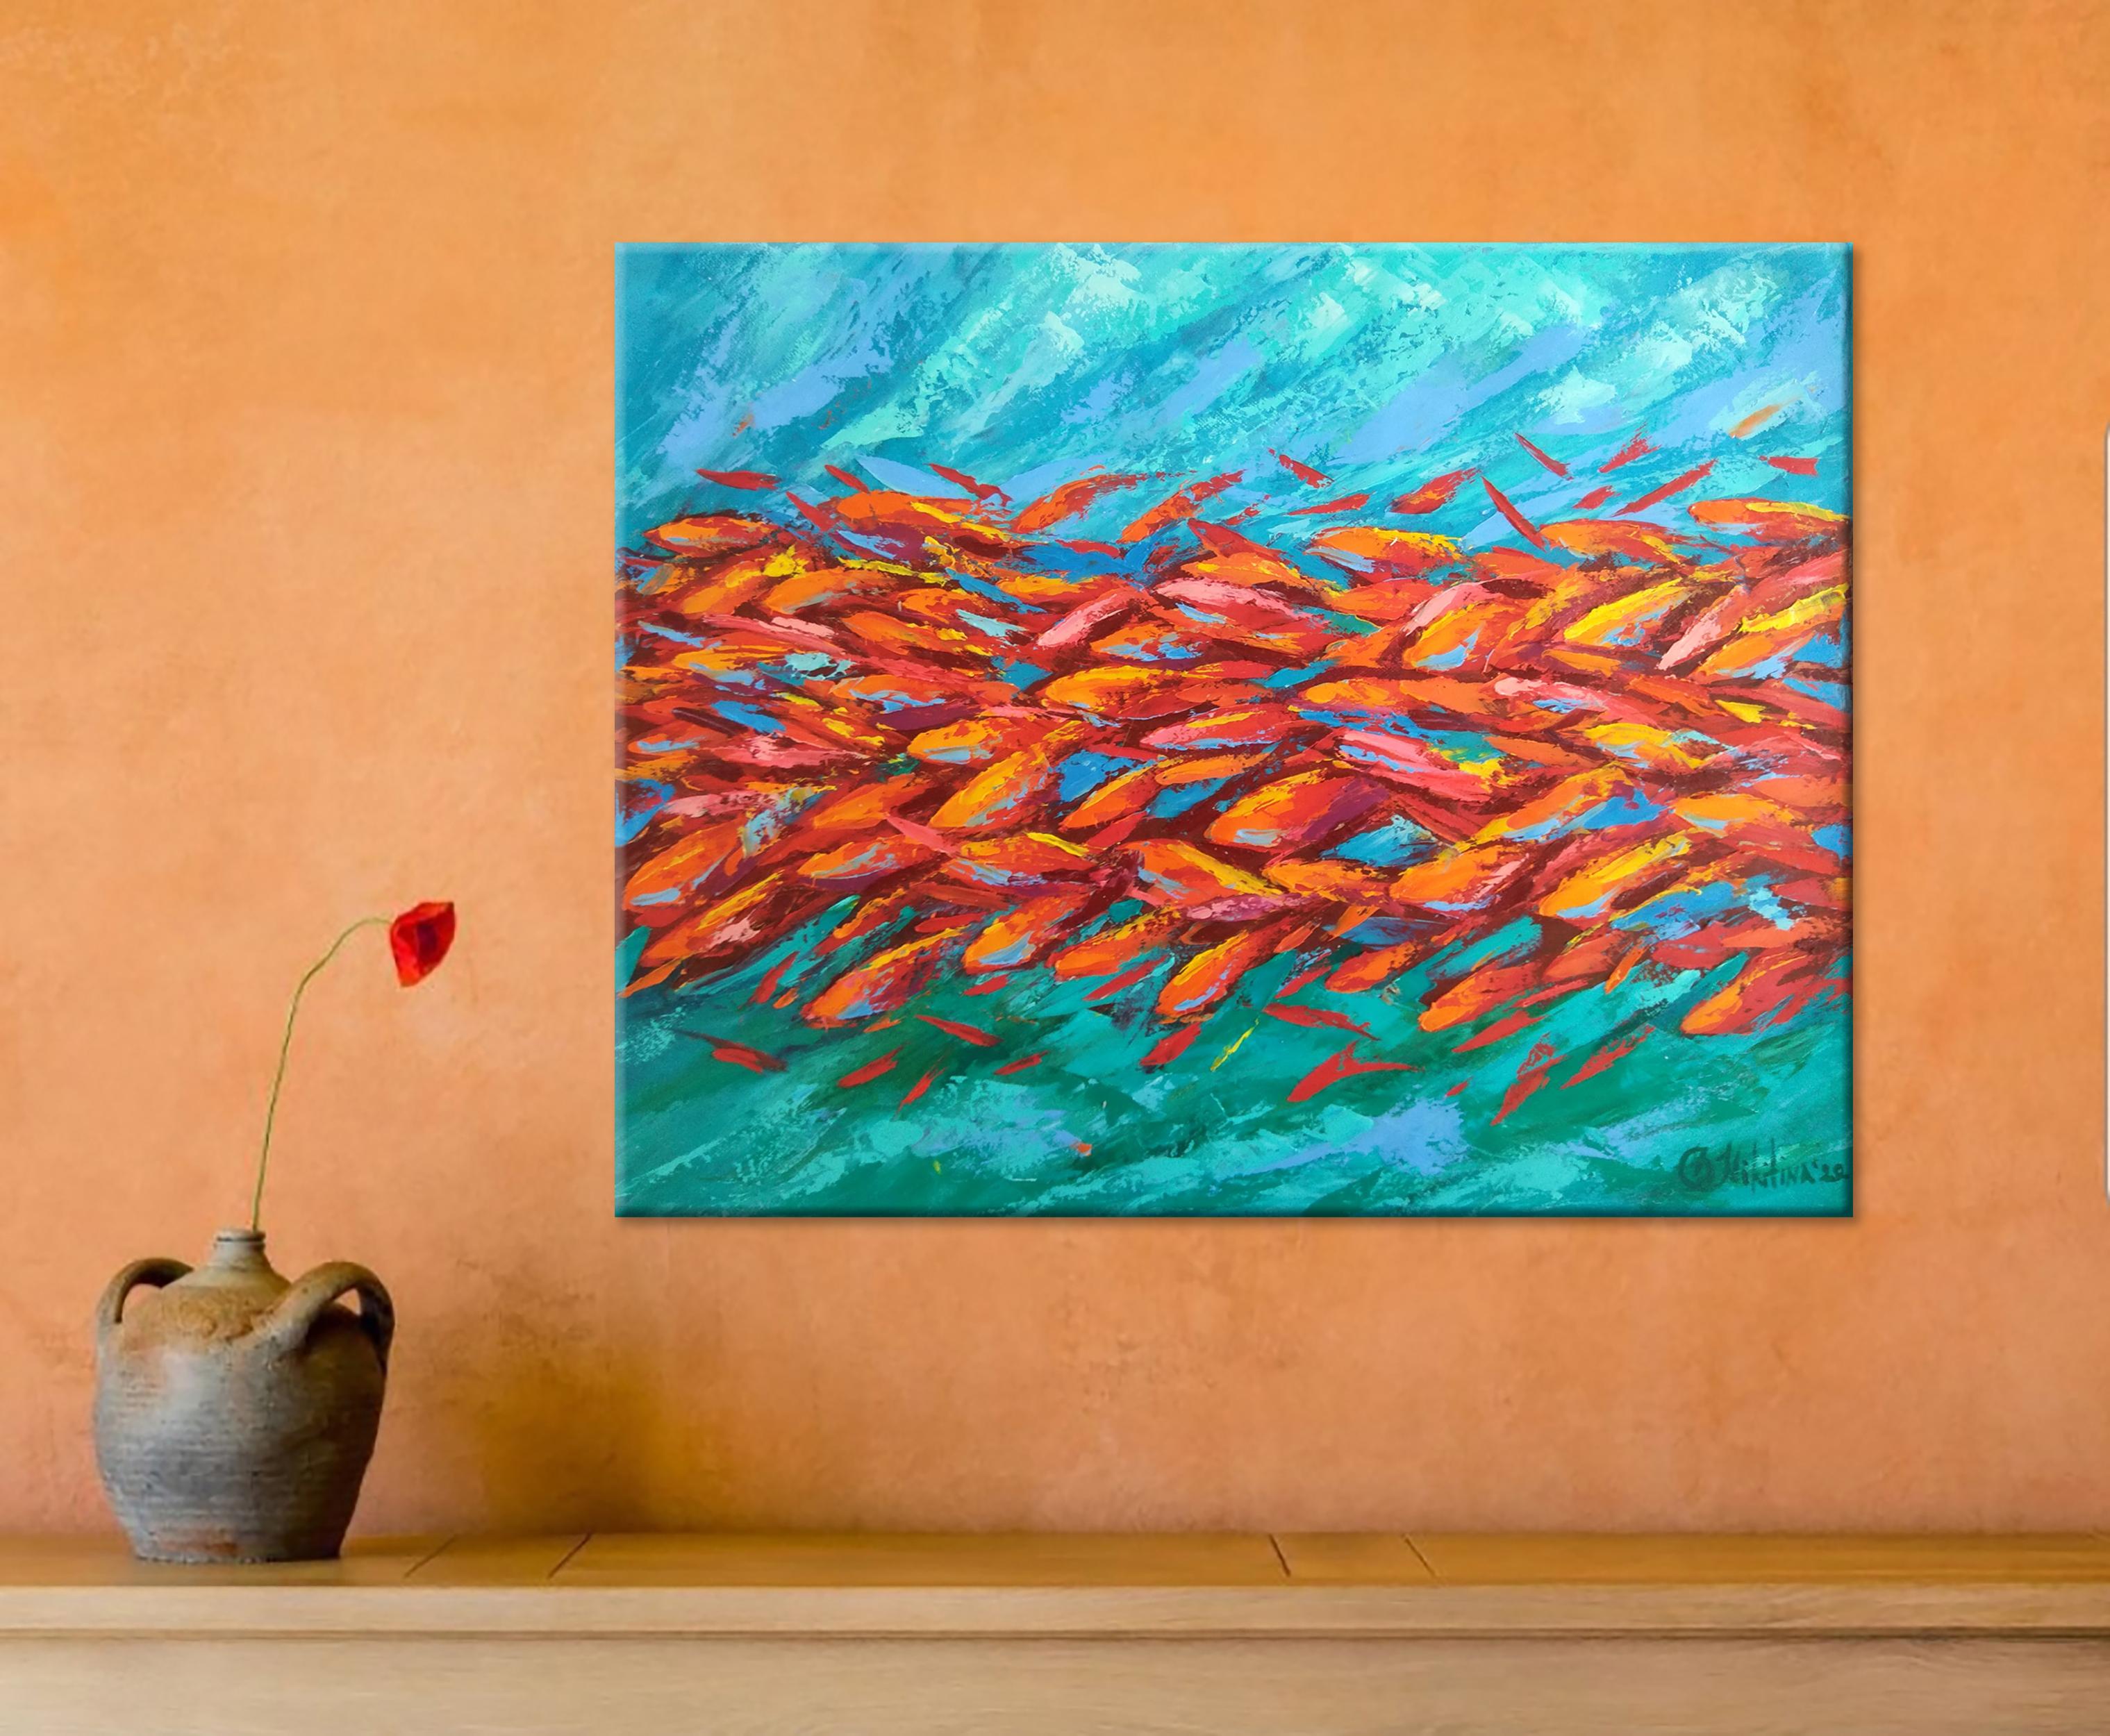 paintings of fish underwater